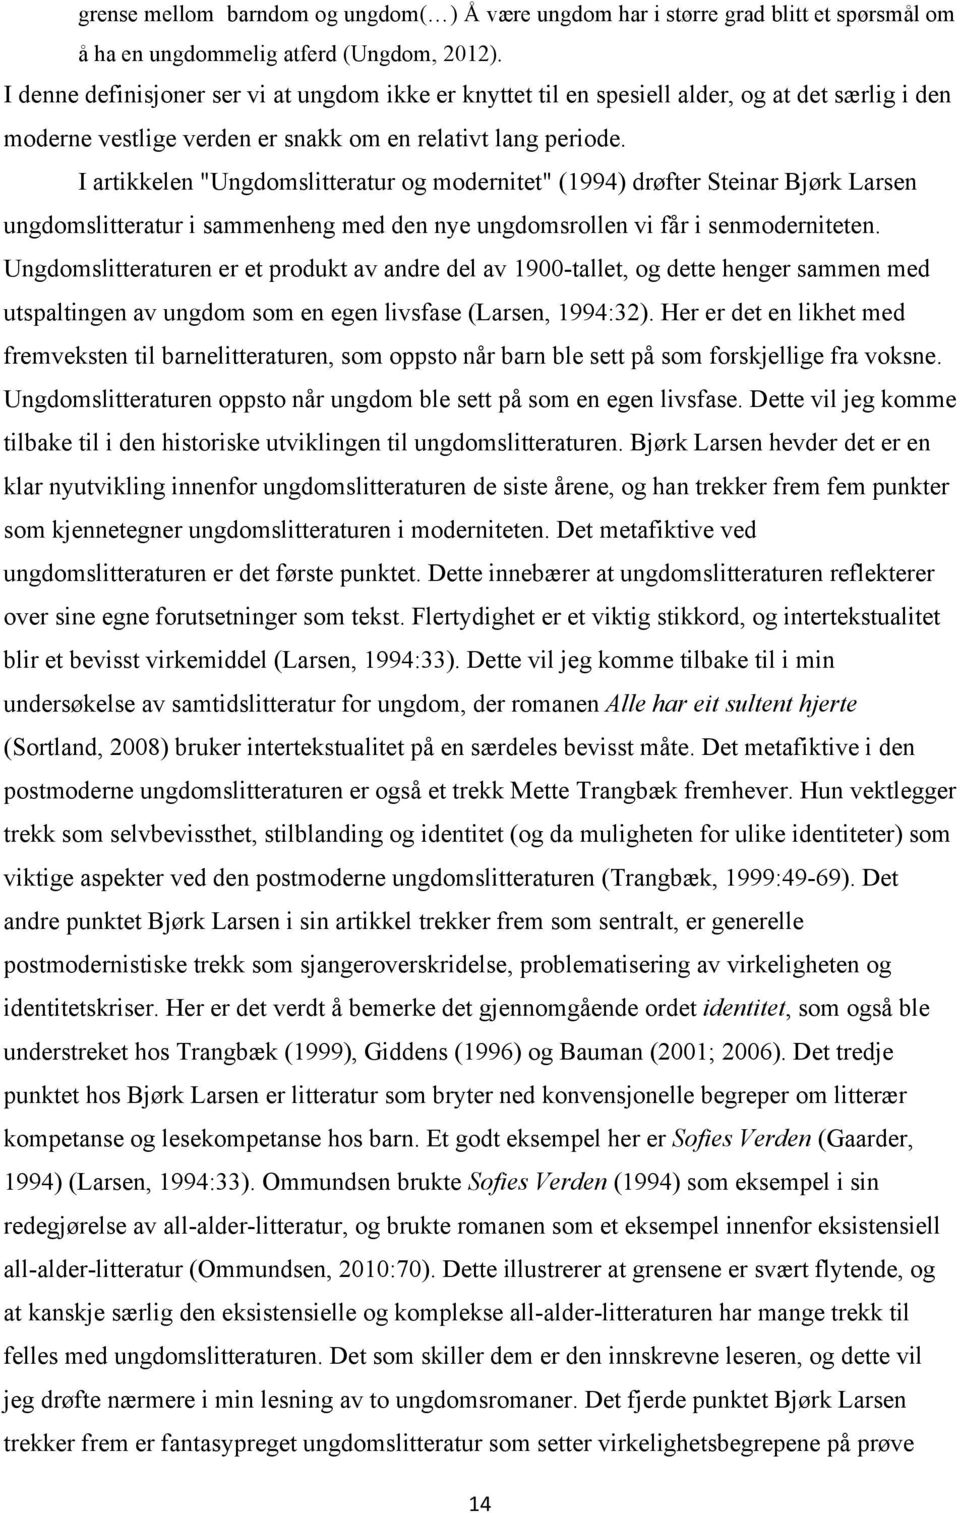 I artikkelen "Ungdomslitteratur og modernitet" (1994) drøfter Steinar Bjørk Larsen ungdomslitteratur i sammenheng med den nye ungdomsrollen vi får i senmoderniteten.